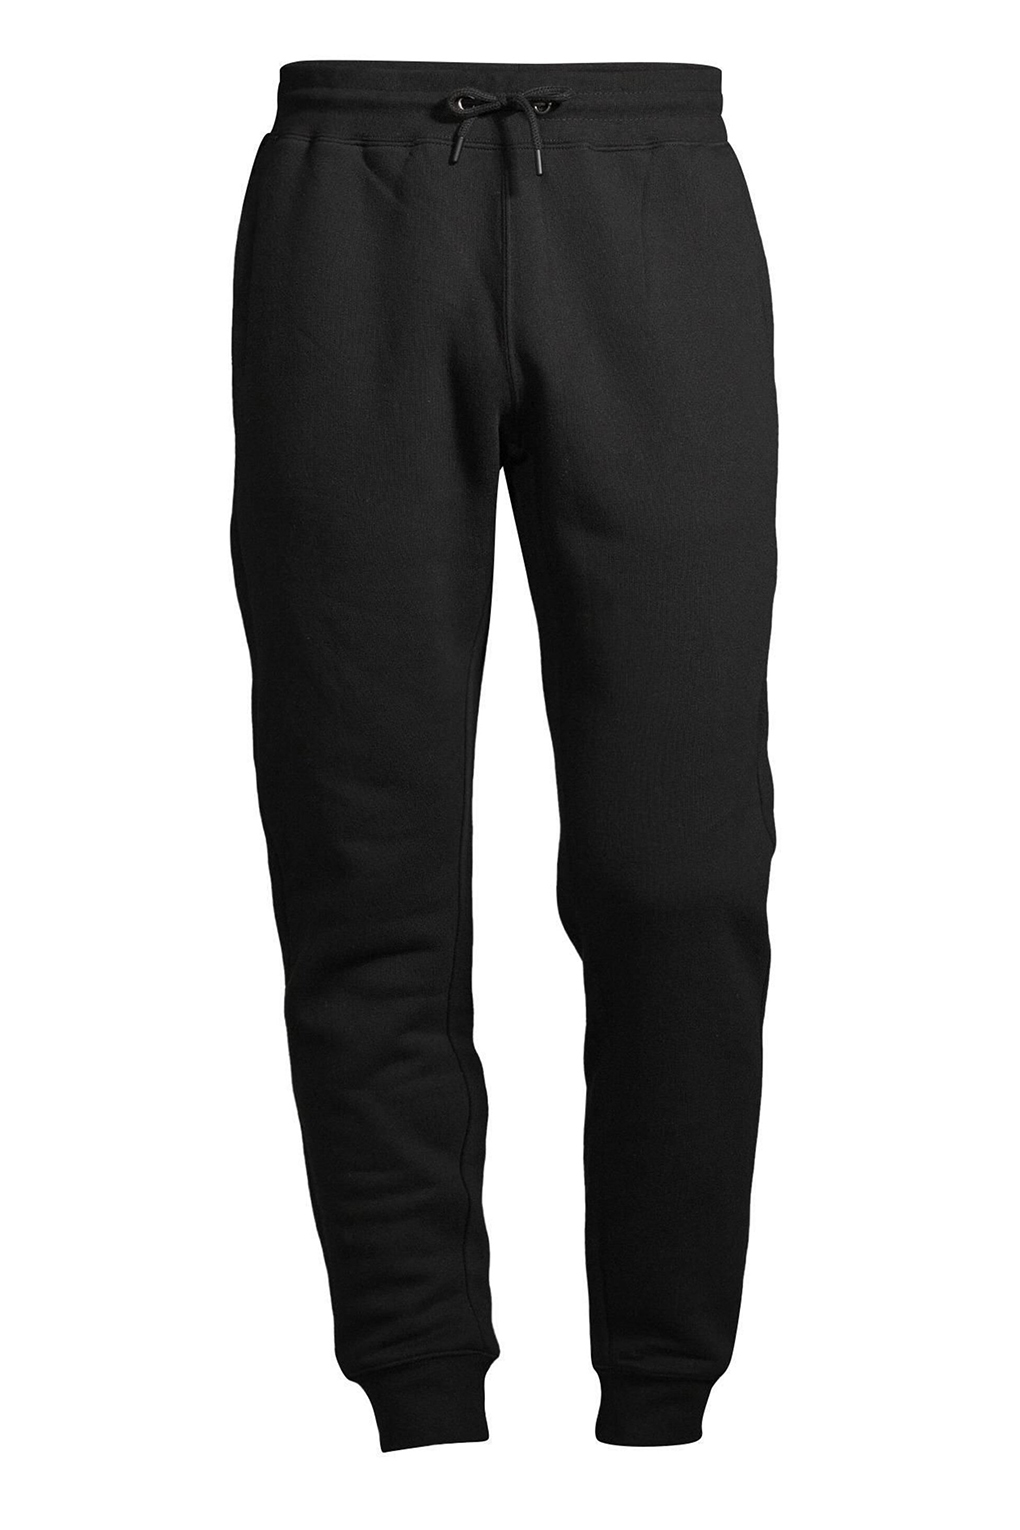 Спортивные брюки мужские Construe 2110 DEAN черные M